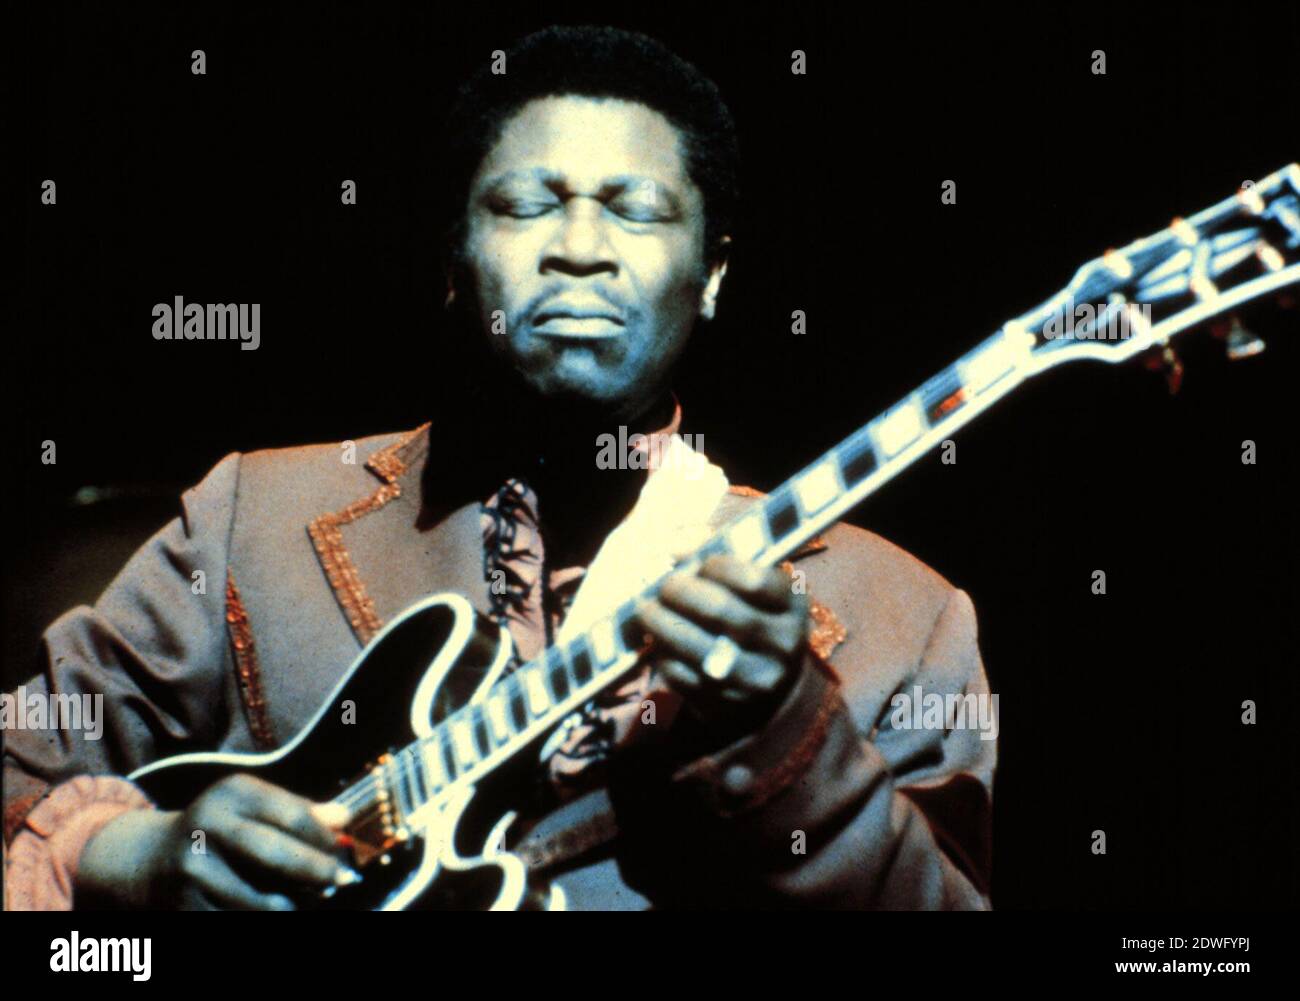 B. B. KING, geboren als Riley B. King, rühmter amerikanischer Blues-Gitarrist und Sänger, B. B. Blues Boy, Aufnahme um 1971. B. B. KING, geboren als Riley B. King, berühmter amerikanischer Bluesgitarrist und Sänger, einer der Könige des elektrischen Blues, B. B. Blues Boy, Foto um 1971. Stockfoto